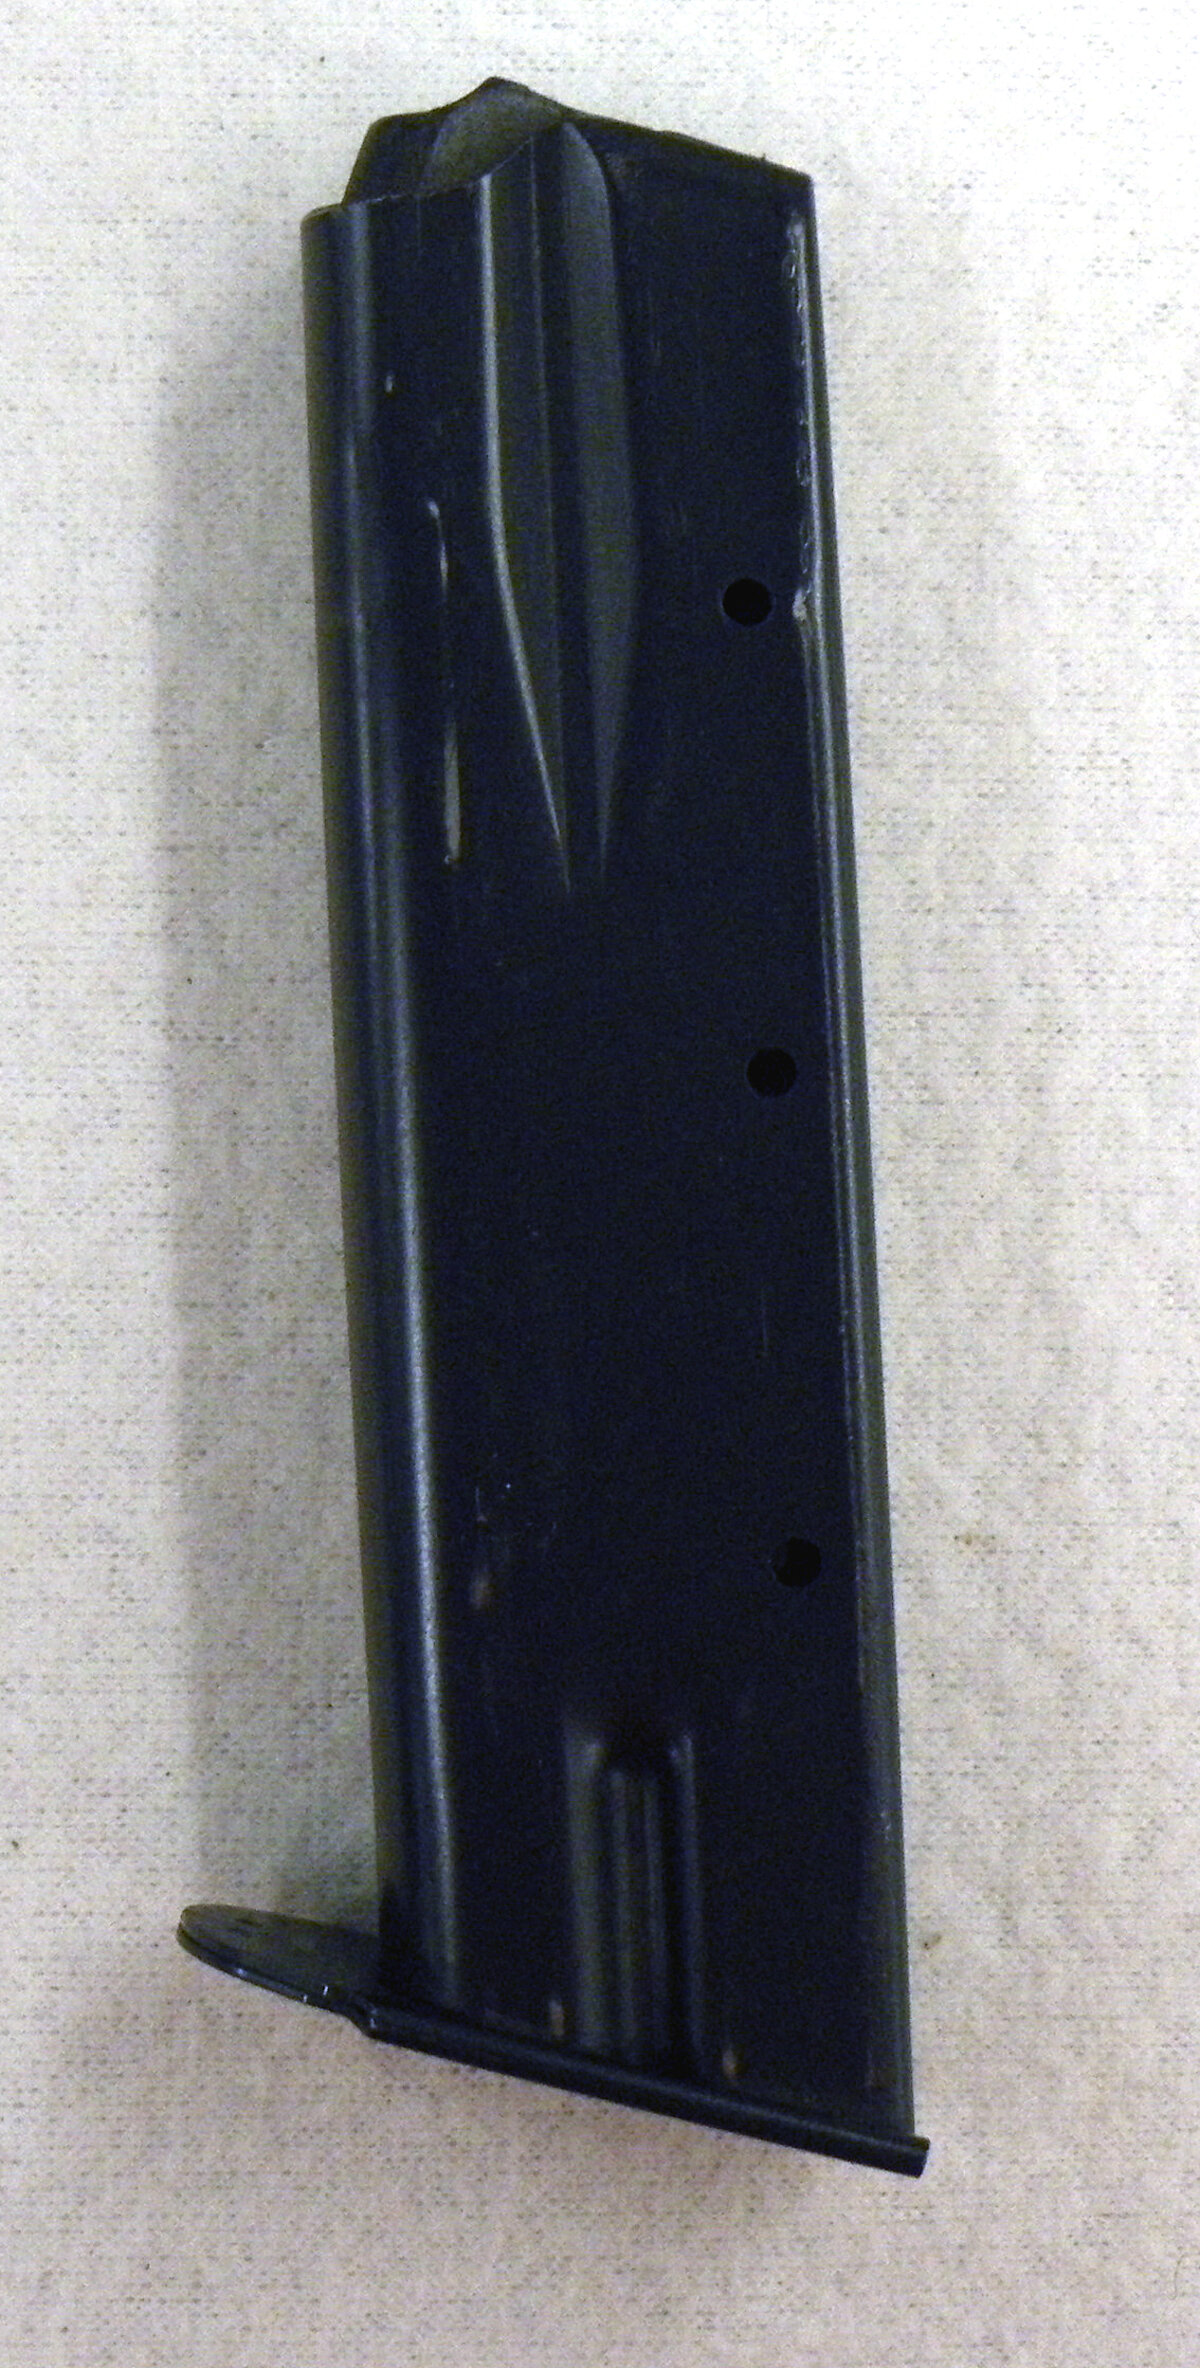 Magazin CZ USA CZ 75B 9mm Luger - Original